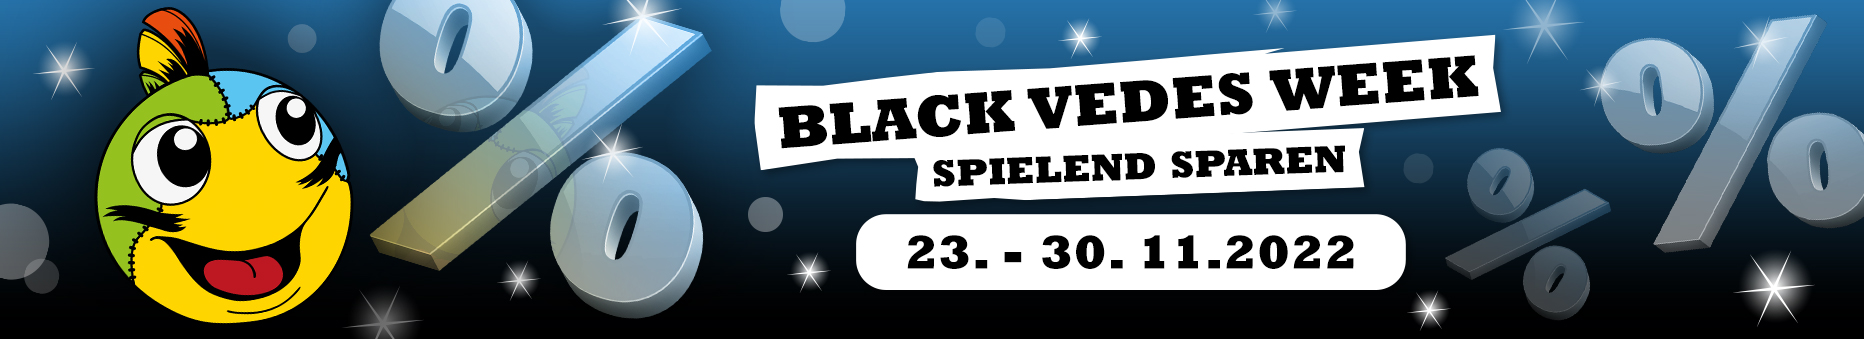 Black Vedes Week